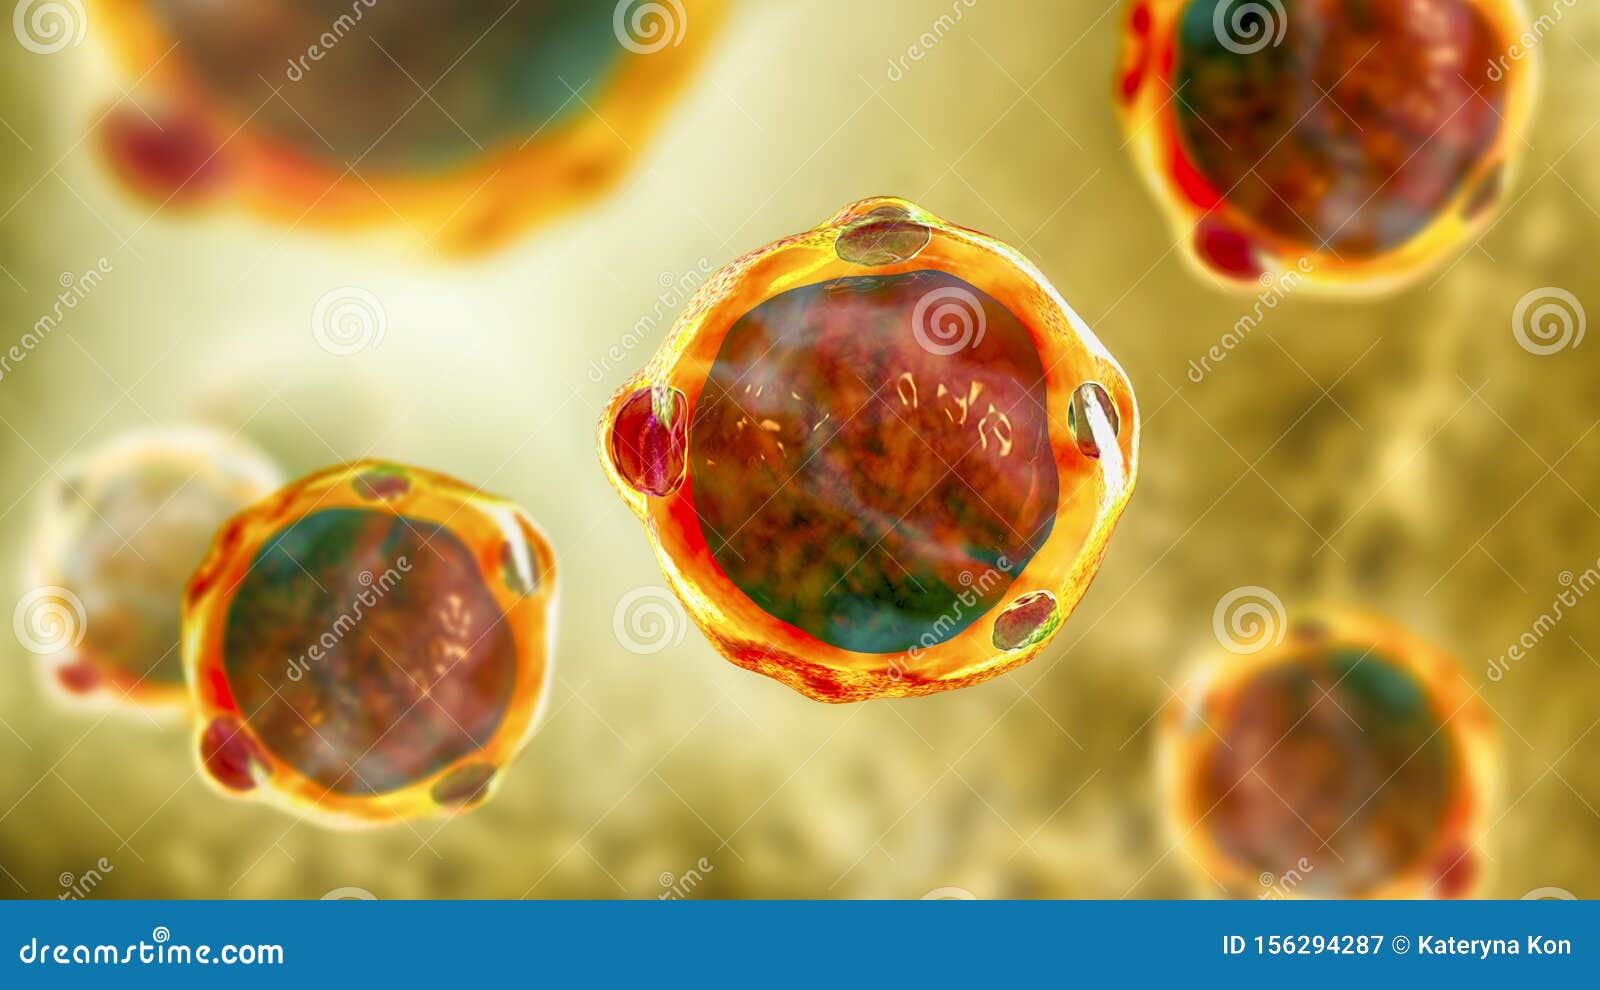 blastocystis hominis parazit)